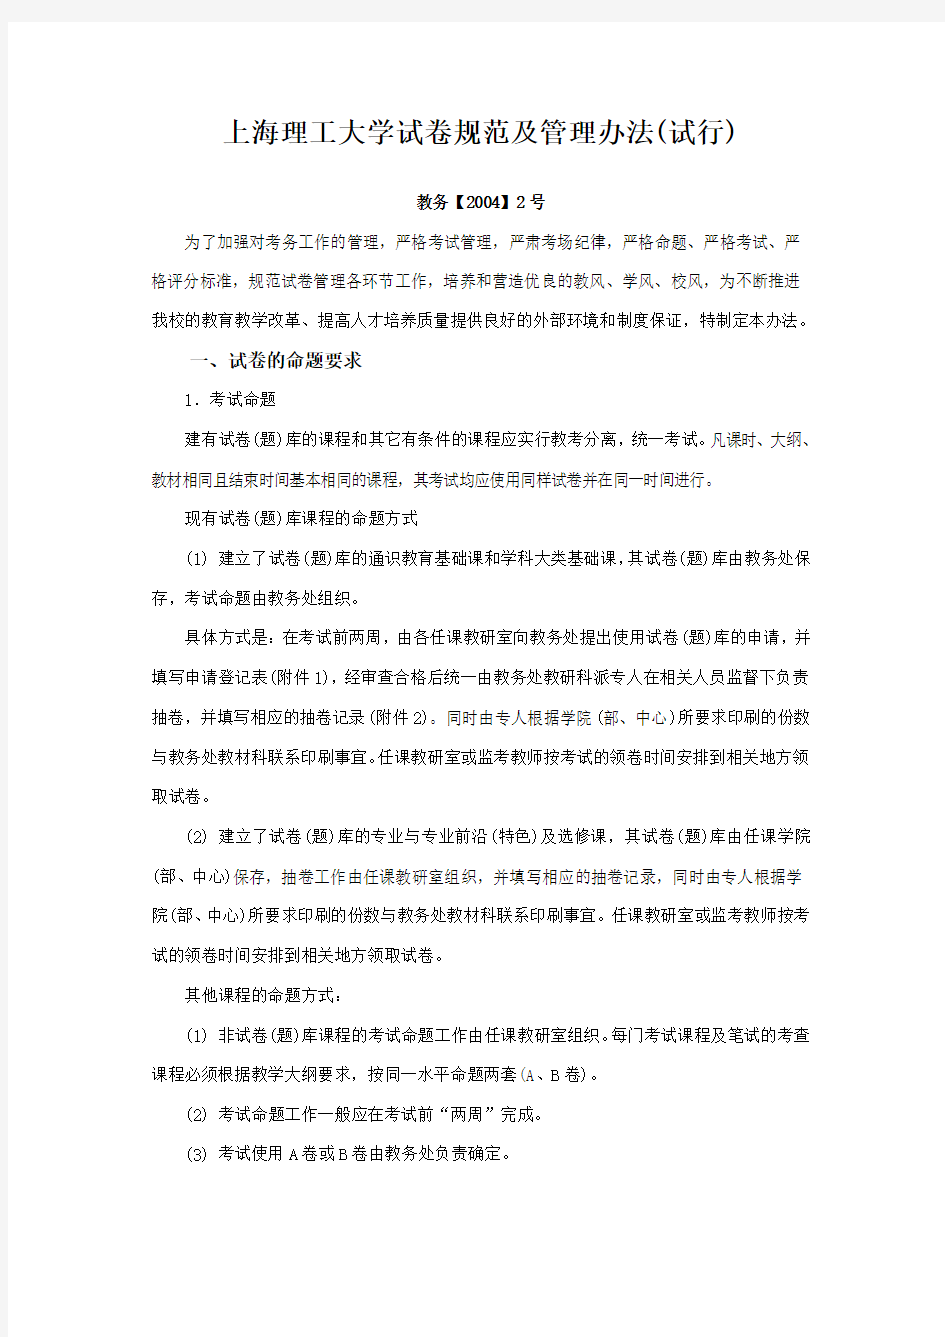 上海理工大学试卷规范及管理办法(试行)